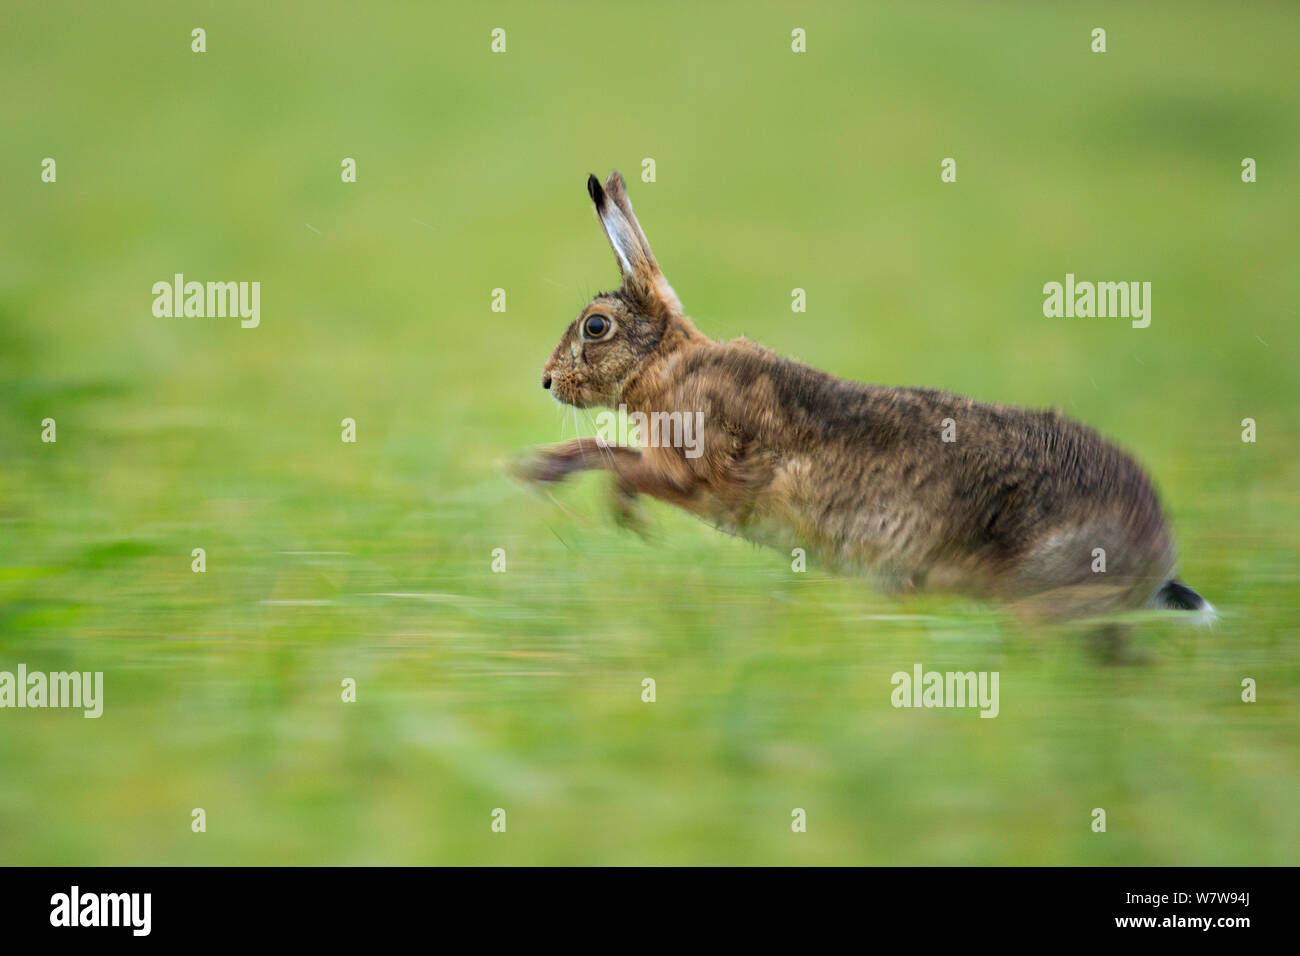 Europäische Hare (Lepus europaeus) läuft im Grünland, Großbritannien Stockfoto